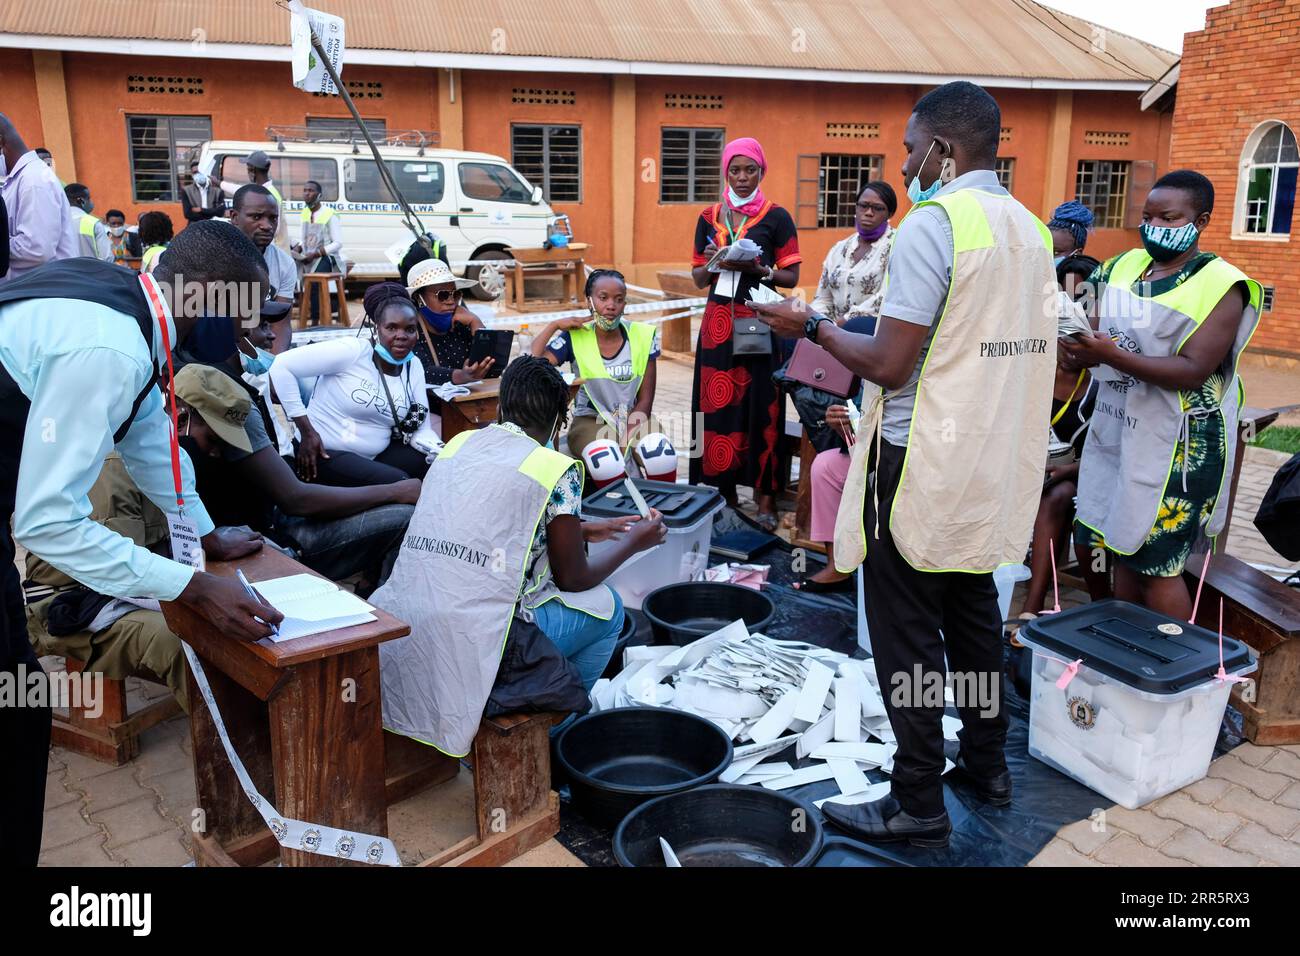 210114 -- NAJJERA OUGANDA, le 14 janvier 2021 -- des membres du personnel comptent les bulletins de vote dans un bureau de vote de Najjera, district de Wakiso, Ouganda, le 14 janvier 2021. Le dépouillement des votes lors des élections présidentielles et législatives de jeudi en Ouganda a commencé avec le corps électoral du pays, indiquant que les résultats devraient être publiés dans 48 heures. Photo de /Xinhua UGANDA-NAJJERA-ELECTIONS GÉNÉRALES-COMPTAGE DES VOTES HajarahxNalwadda PUBLICATIONxNOTxINxCHN Banque D'Images